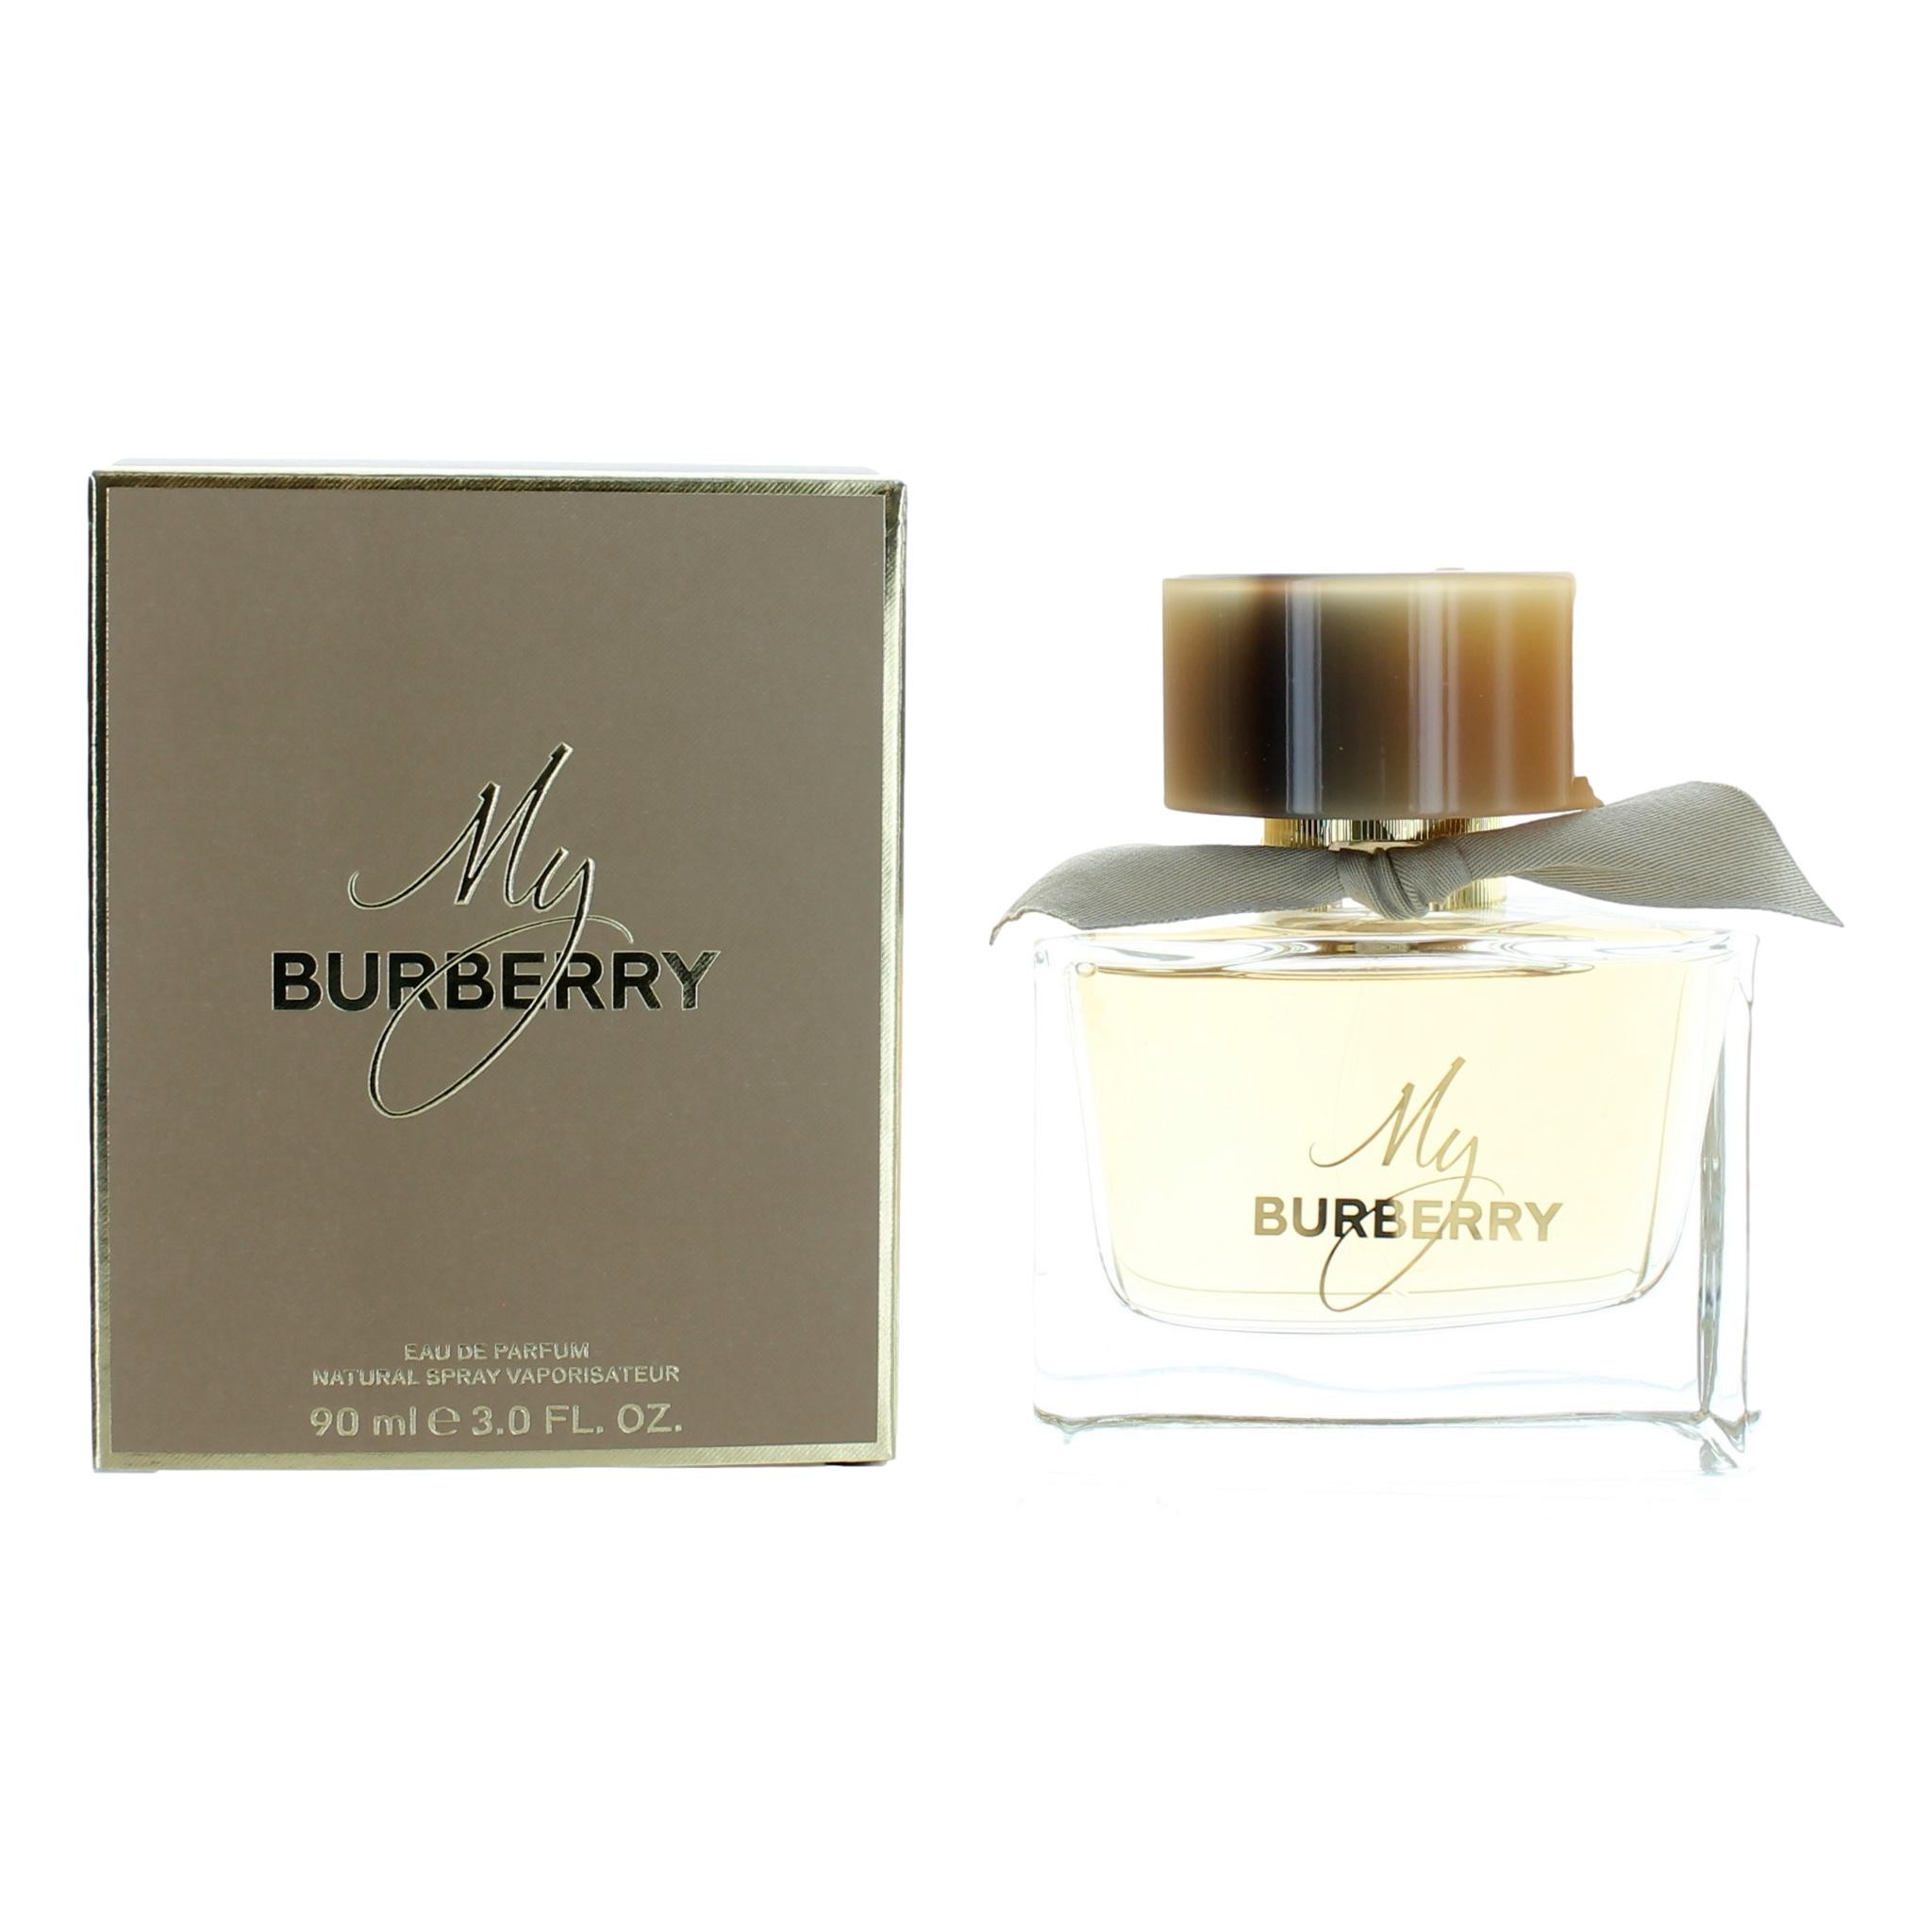 My Burberry by Burberry 3 oz Eau De Parfum Spray for Women